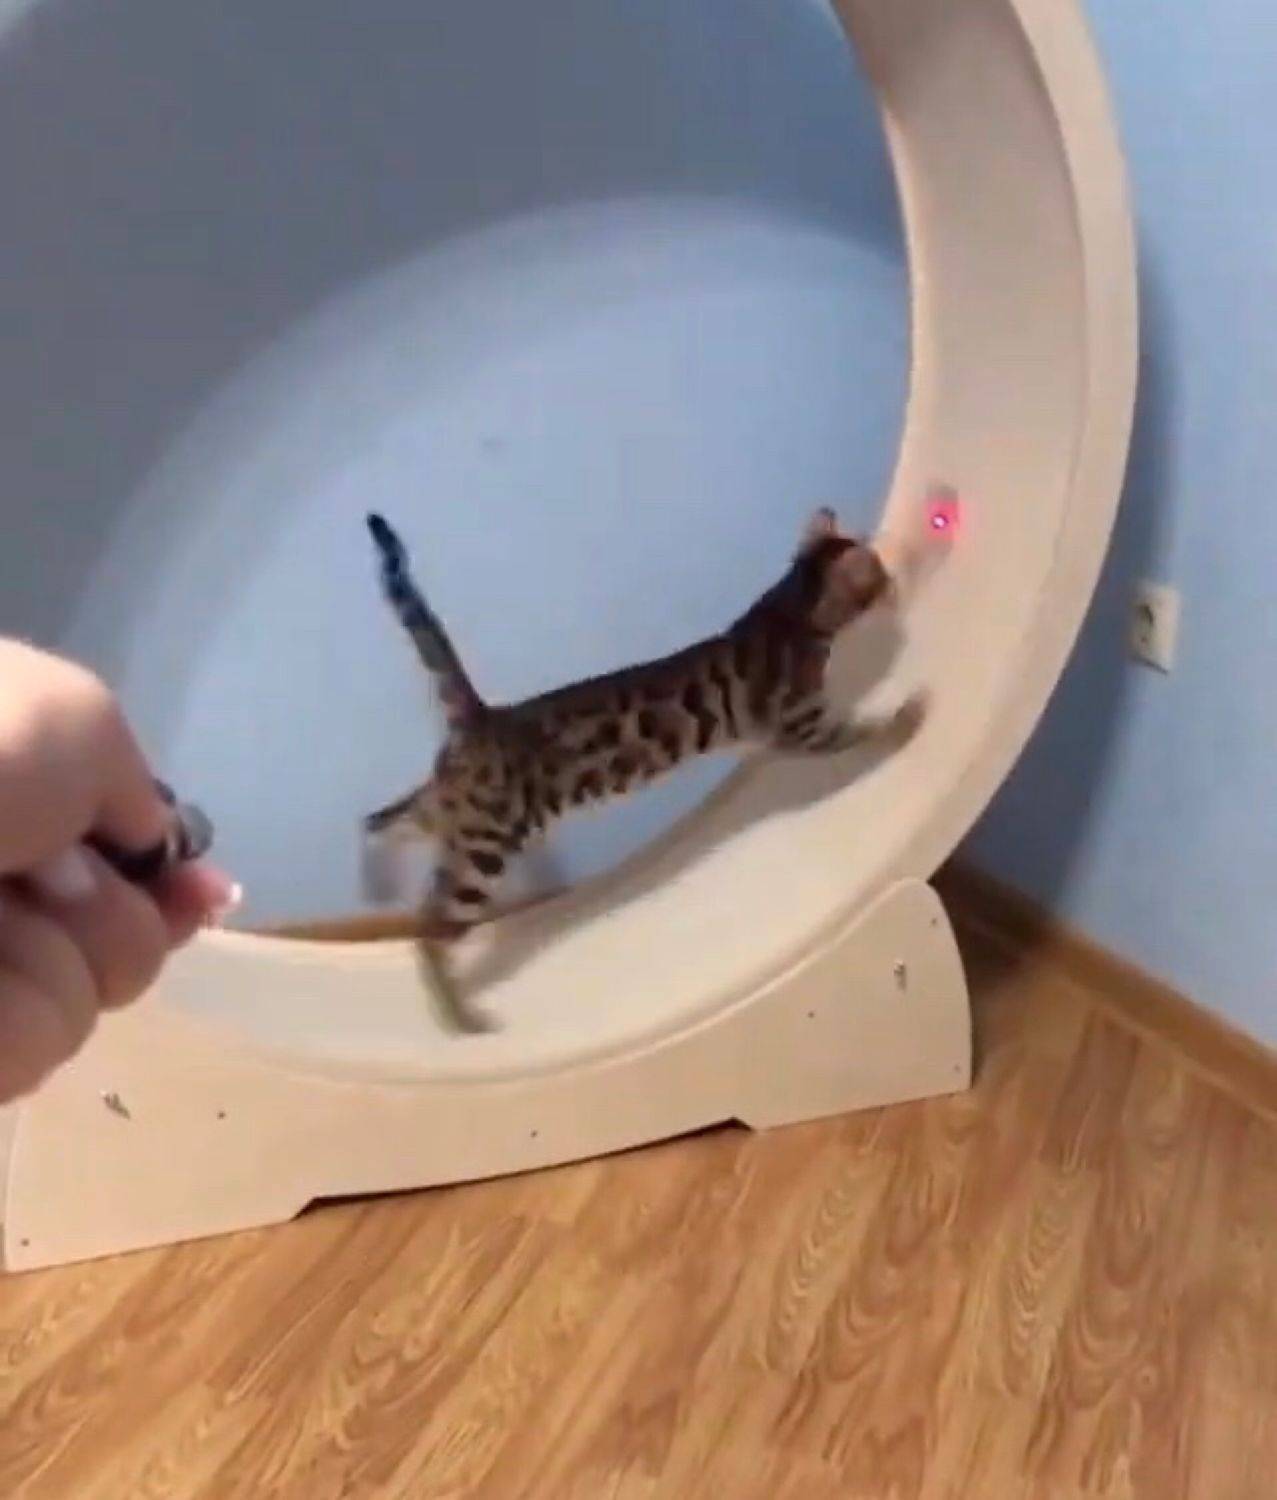 Беговое колесо для кошек: как сделать своими руками